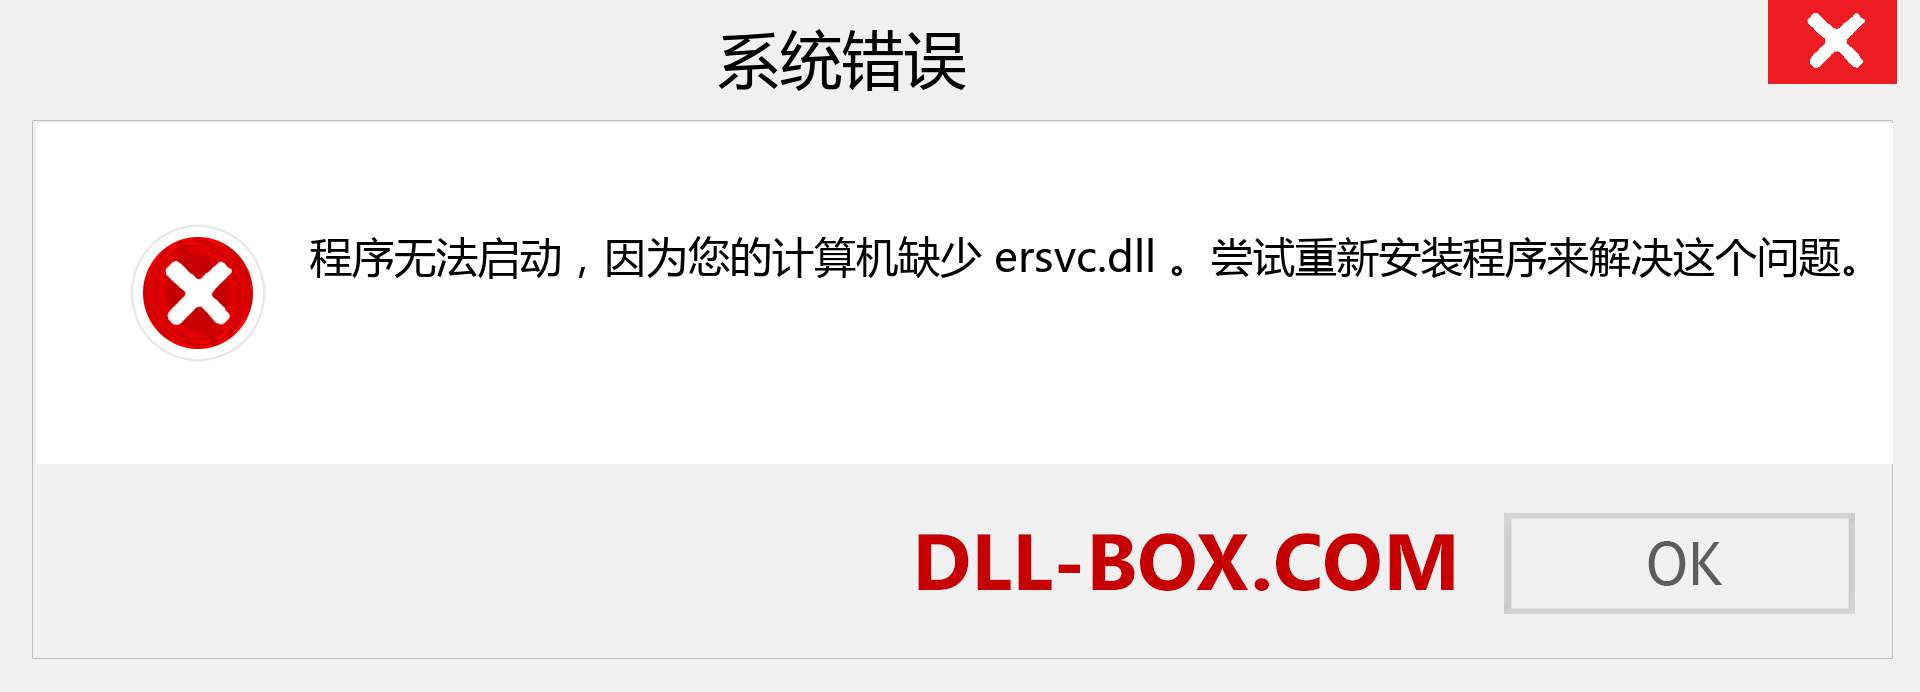 ersvc.dll 文件丢失？。 适用于 Windows 7、8、10 的下载 - 修复 Windows、照片、图像上的 ersvc dll 丢失错误